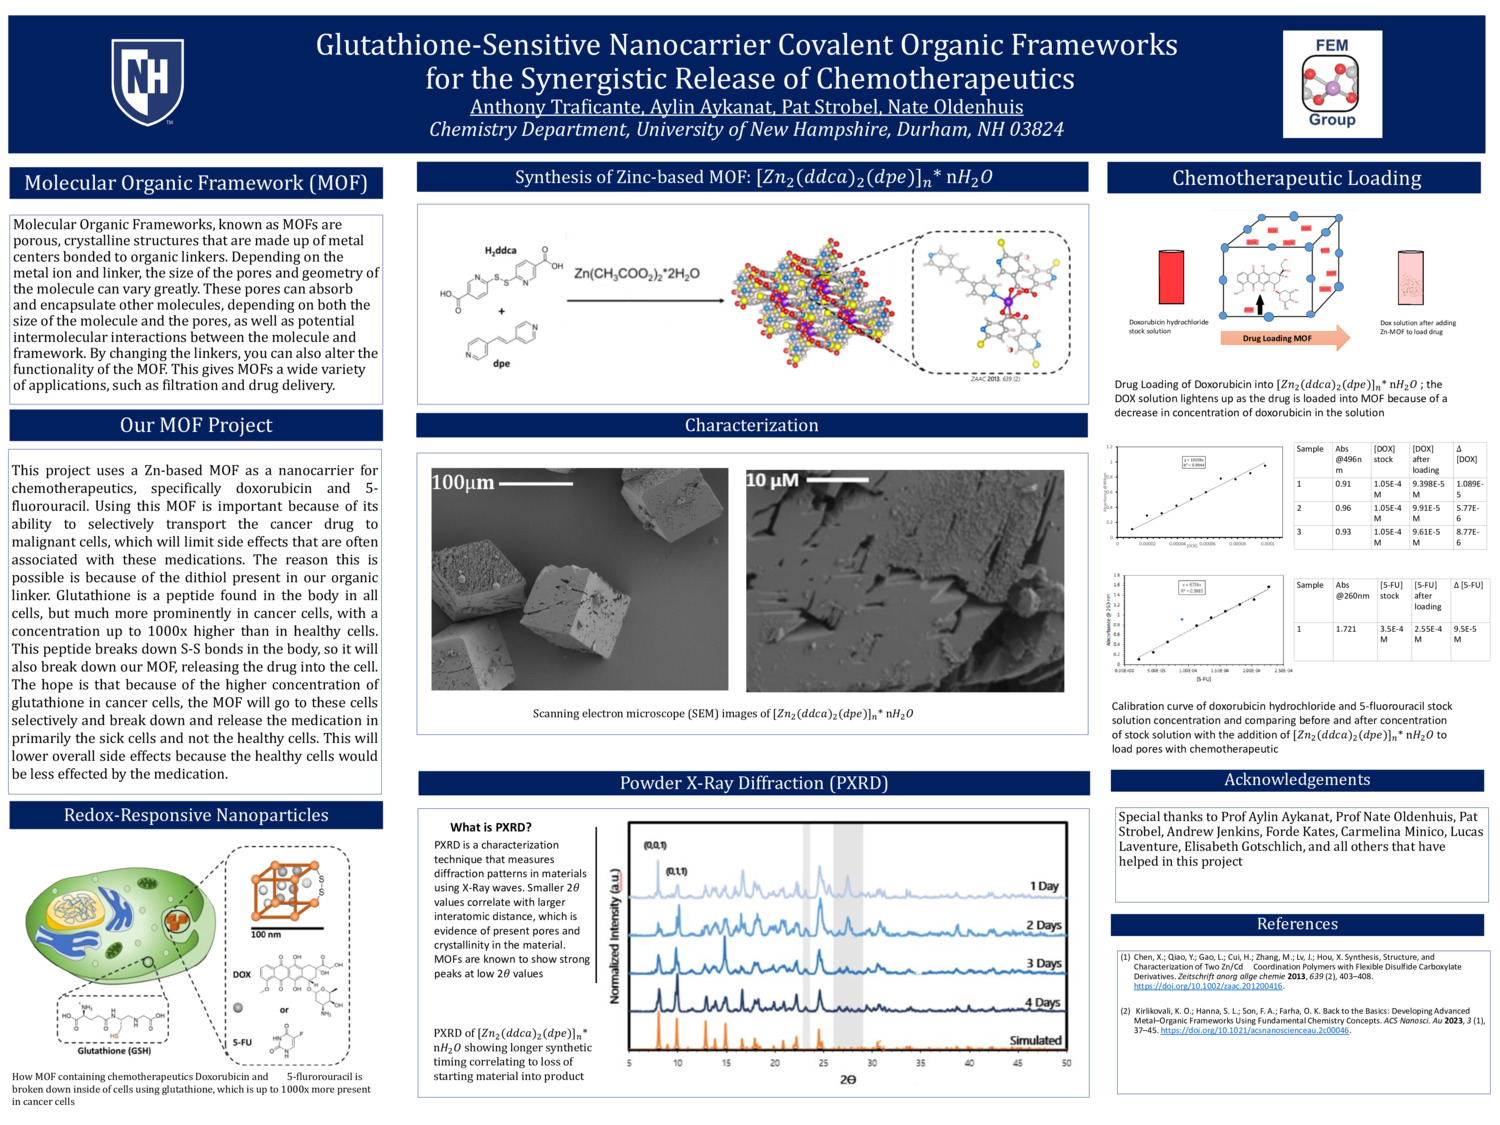 Glutathione-Sensitive Nanocarrier Covalent Organic Frameworks For The Synergistic Release Of Chemotherapeutics by avt1007